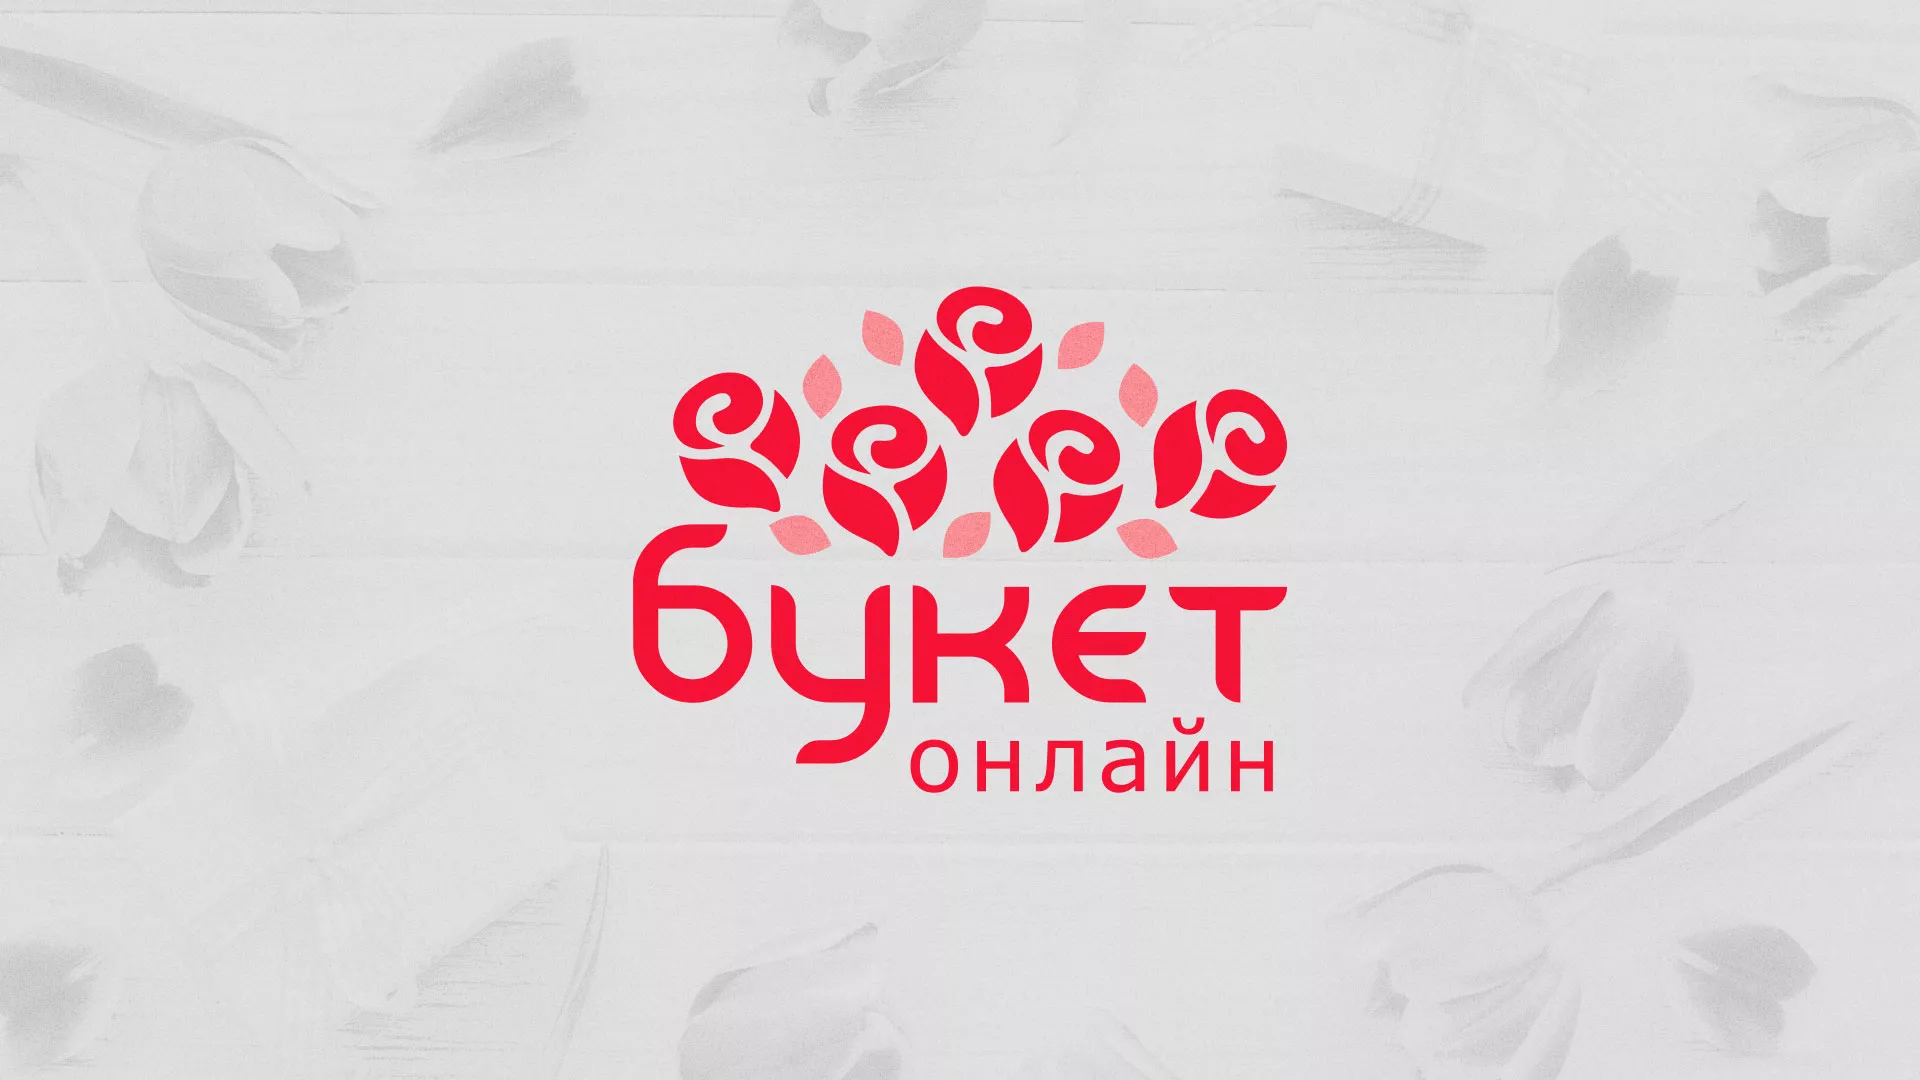 Создание интернет-магазина «Букет-онлайн» по цветам в Дмитриеве